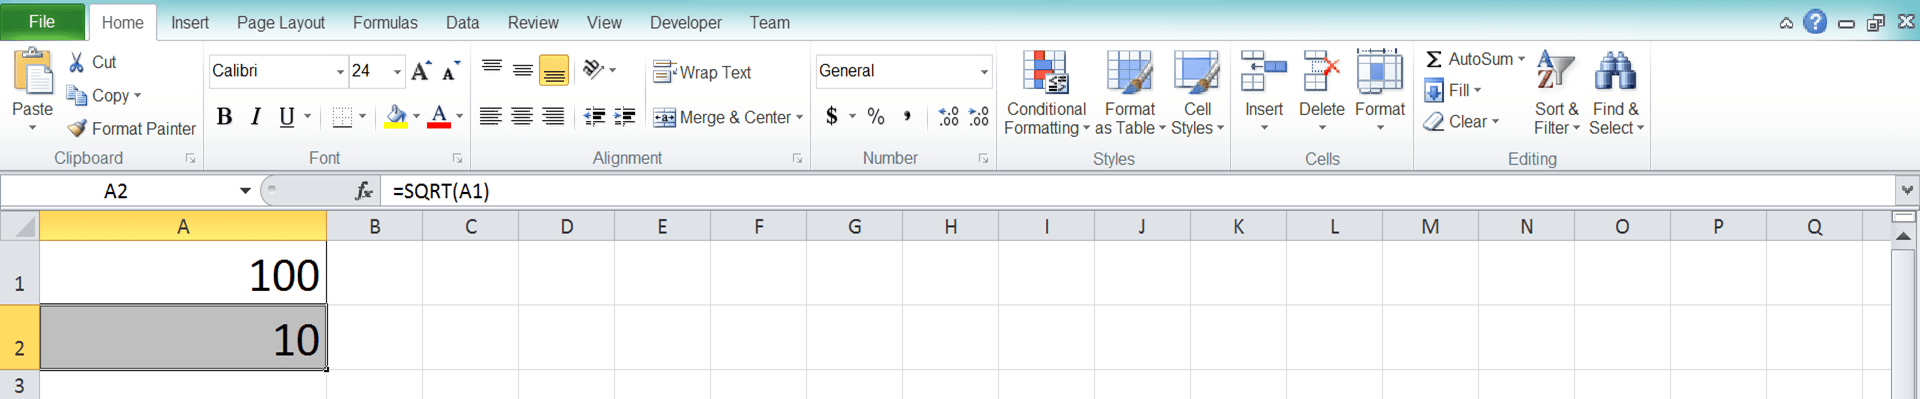 Cara Menghitung Akar di Excel Beserta Berbagai Rumus dan Fungsinya - Screenshot Langkah 3-6